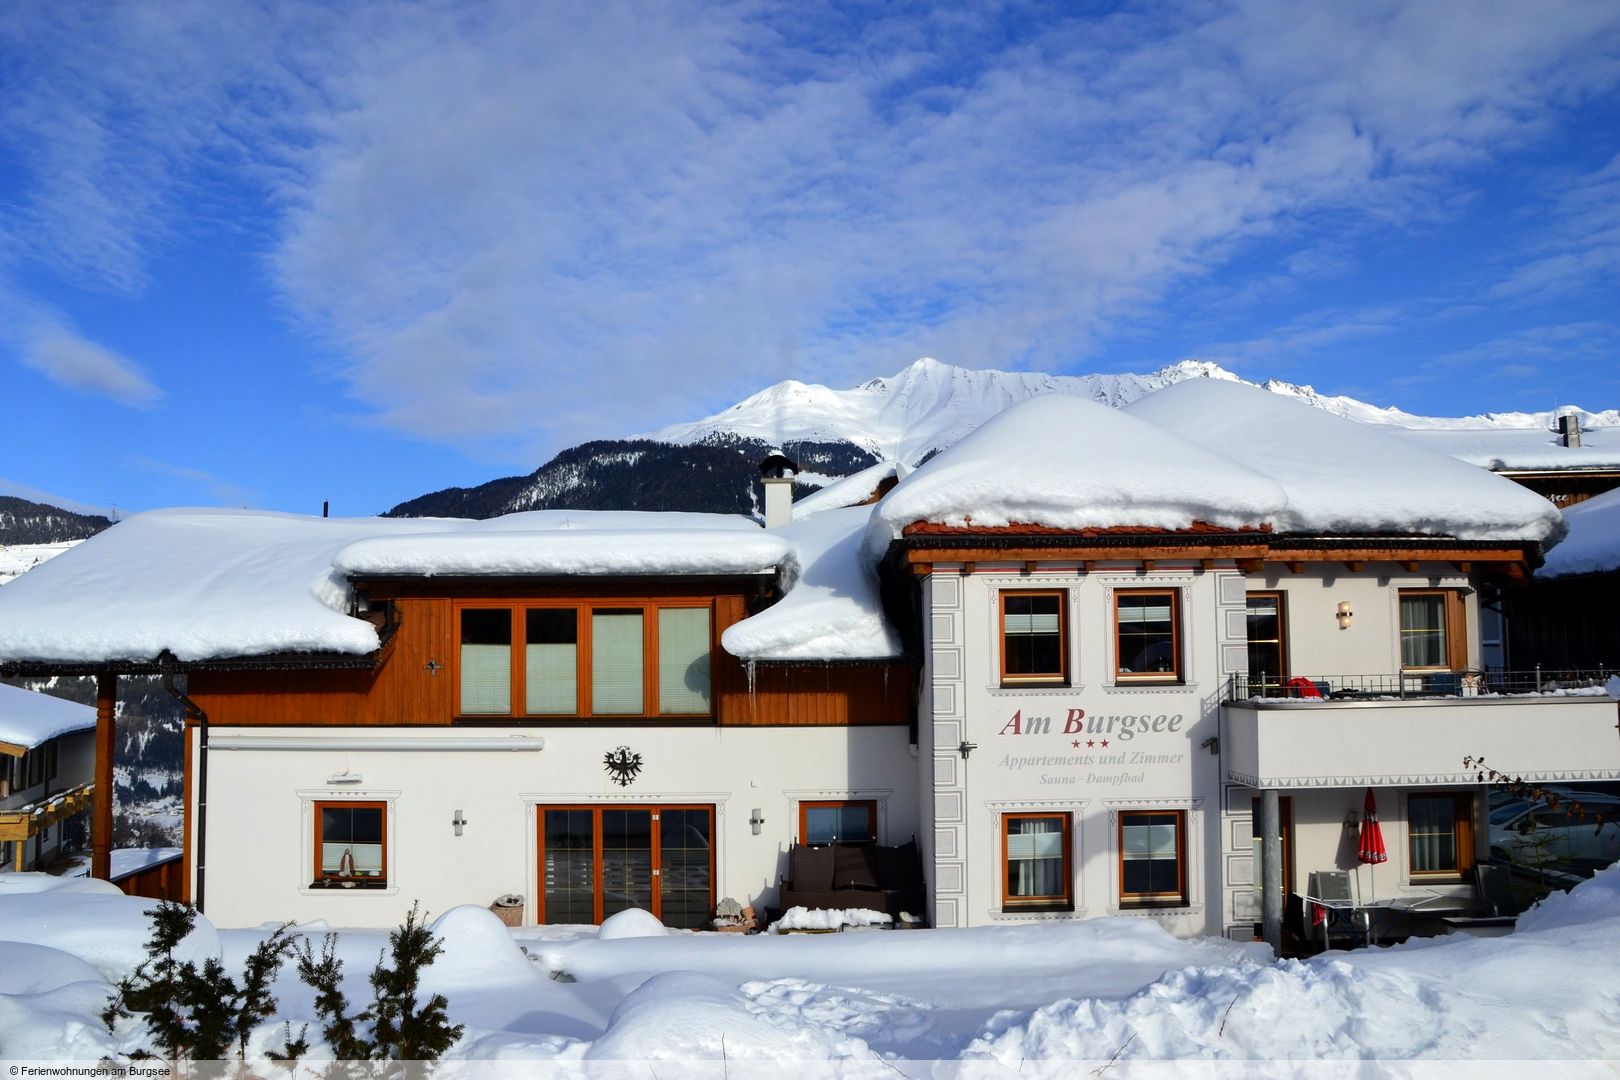 Meer info over Appartementen am Burgsee  bij Wintertrex